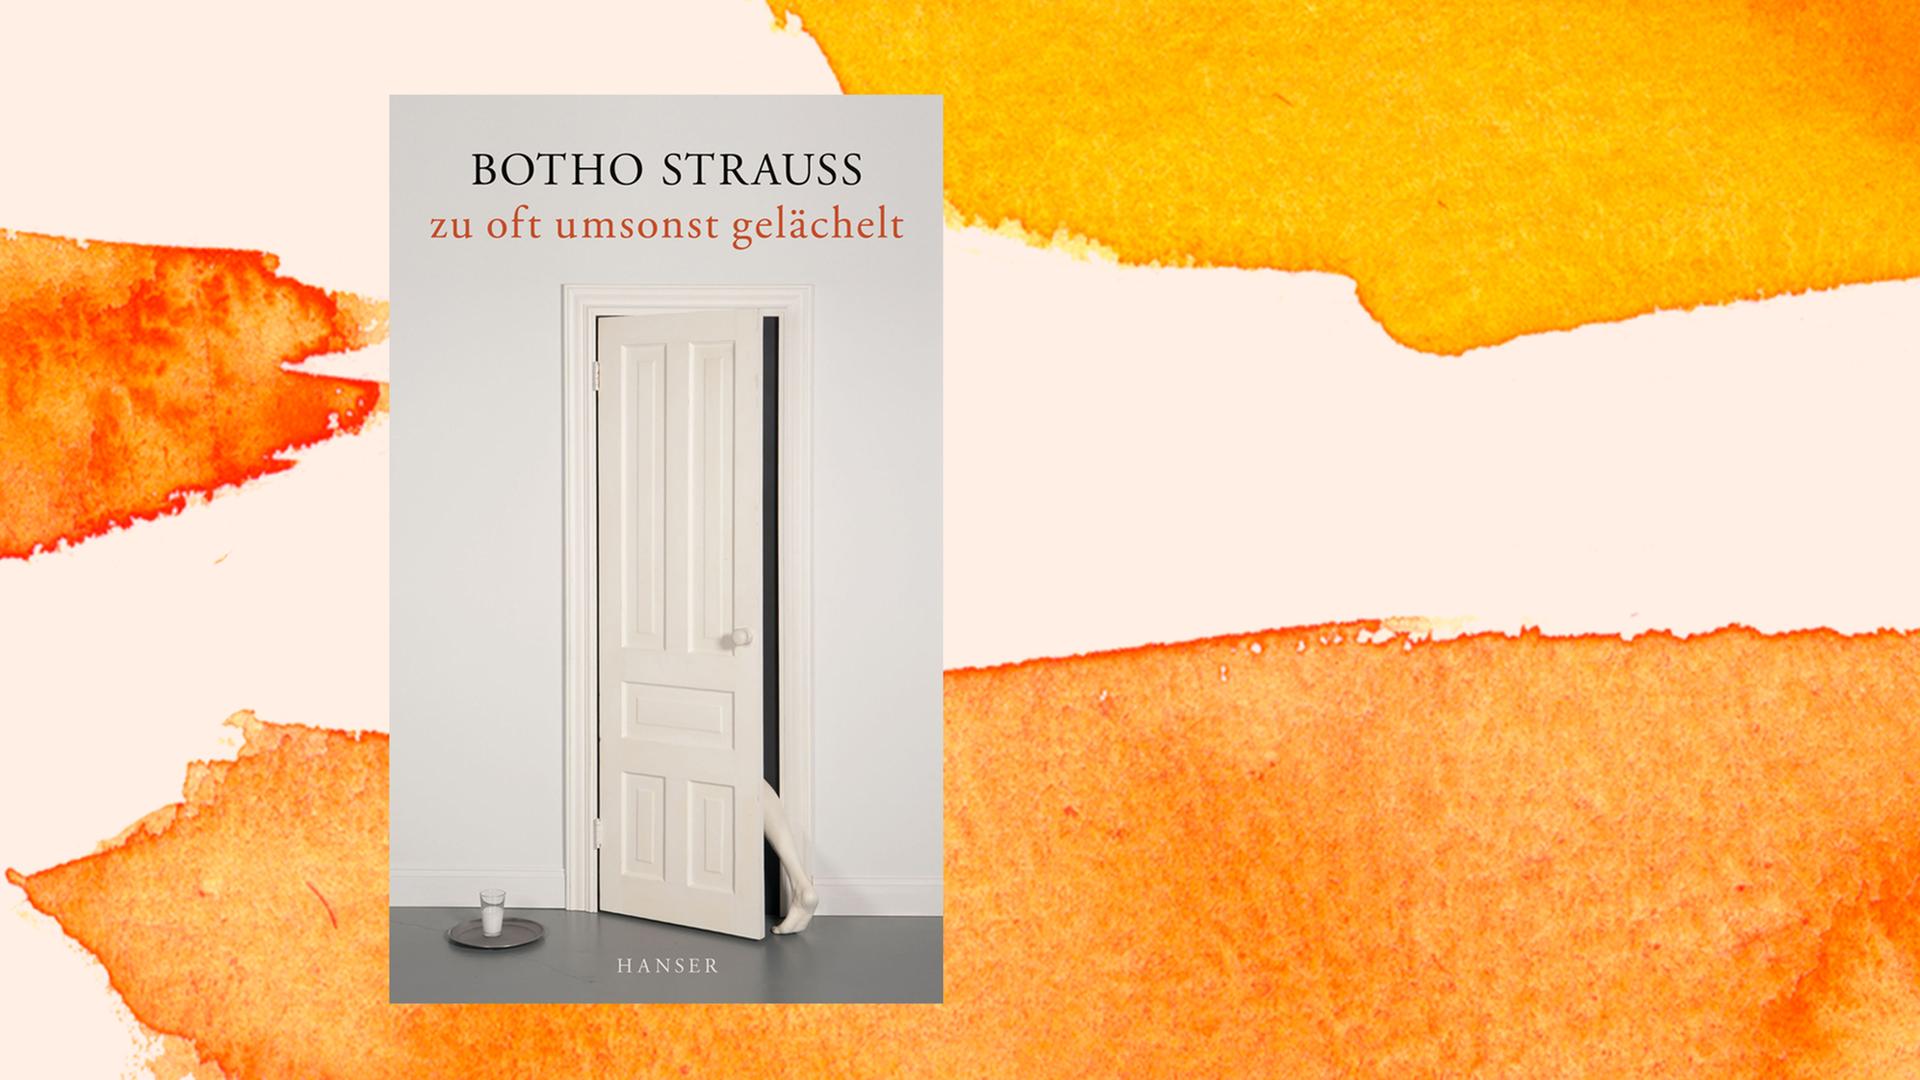 Das Buchcover zeigt eine in hellen Farben gehaltene Wand mit einer farblich ähnlich gestalteten Tür, die einen Spalt weit offen steht.